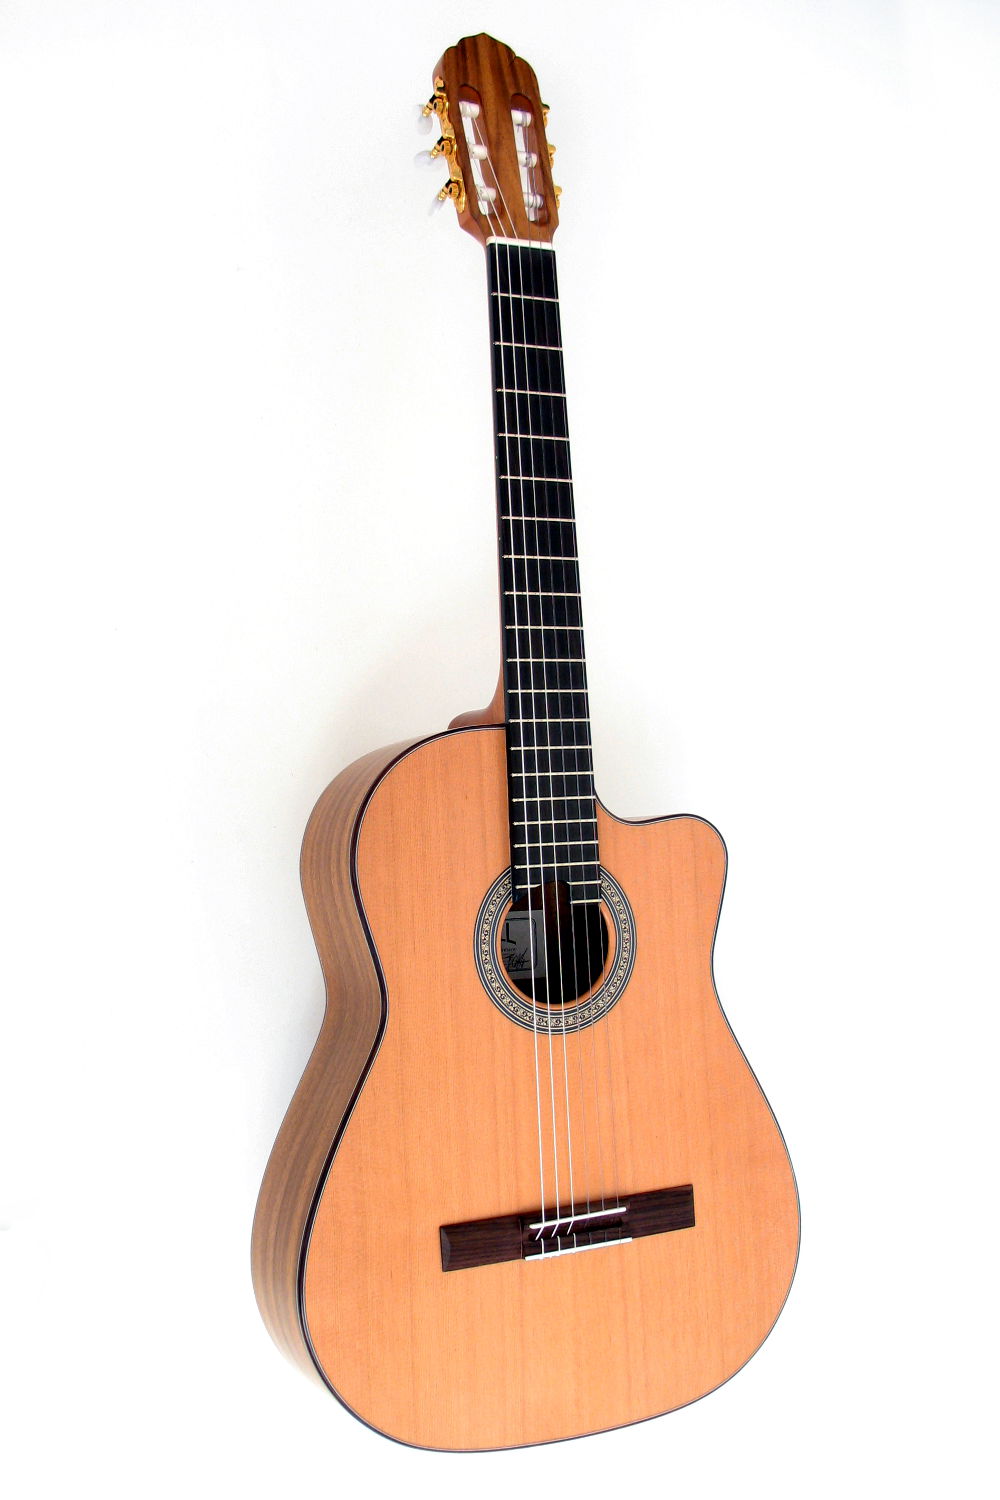 Classical crossover Guitar Cutaway indian walnut cedar